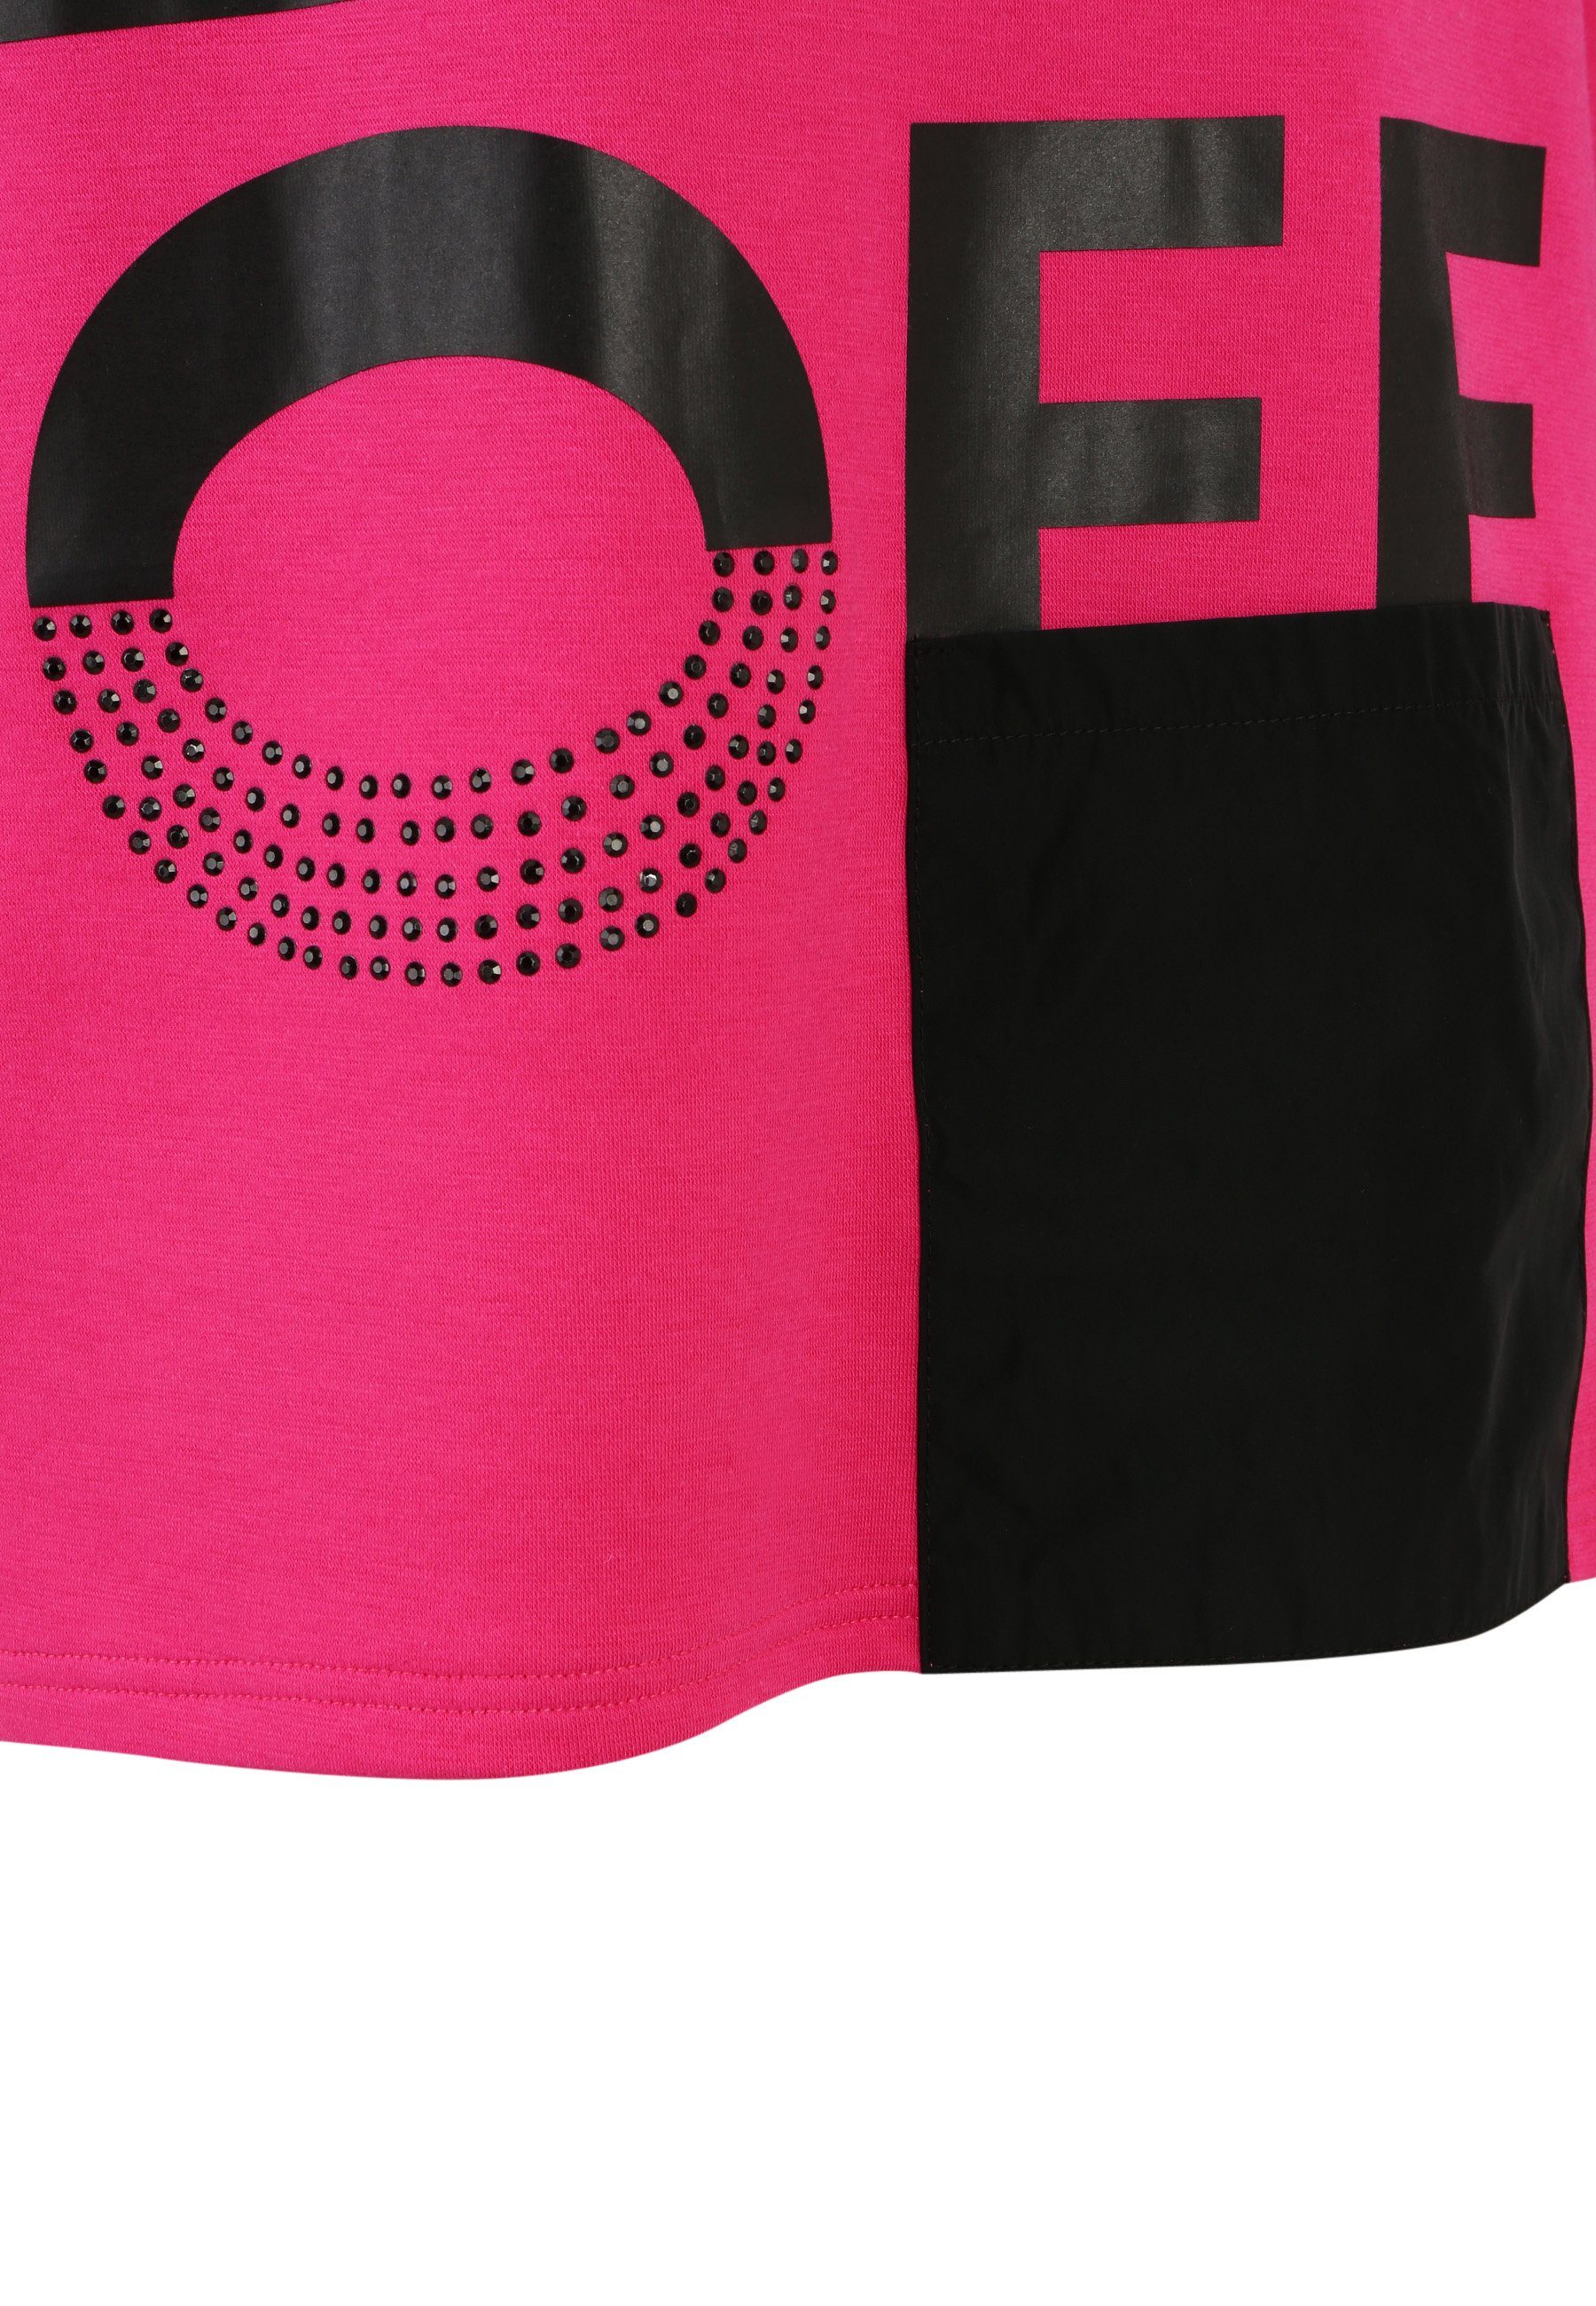 Doris Streich mit mit Nylon-Tasche modernem Longshirt Sweatshirt PINK Motivprint und Design